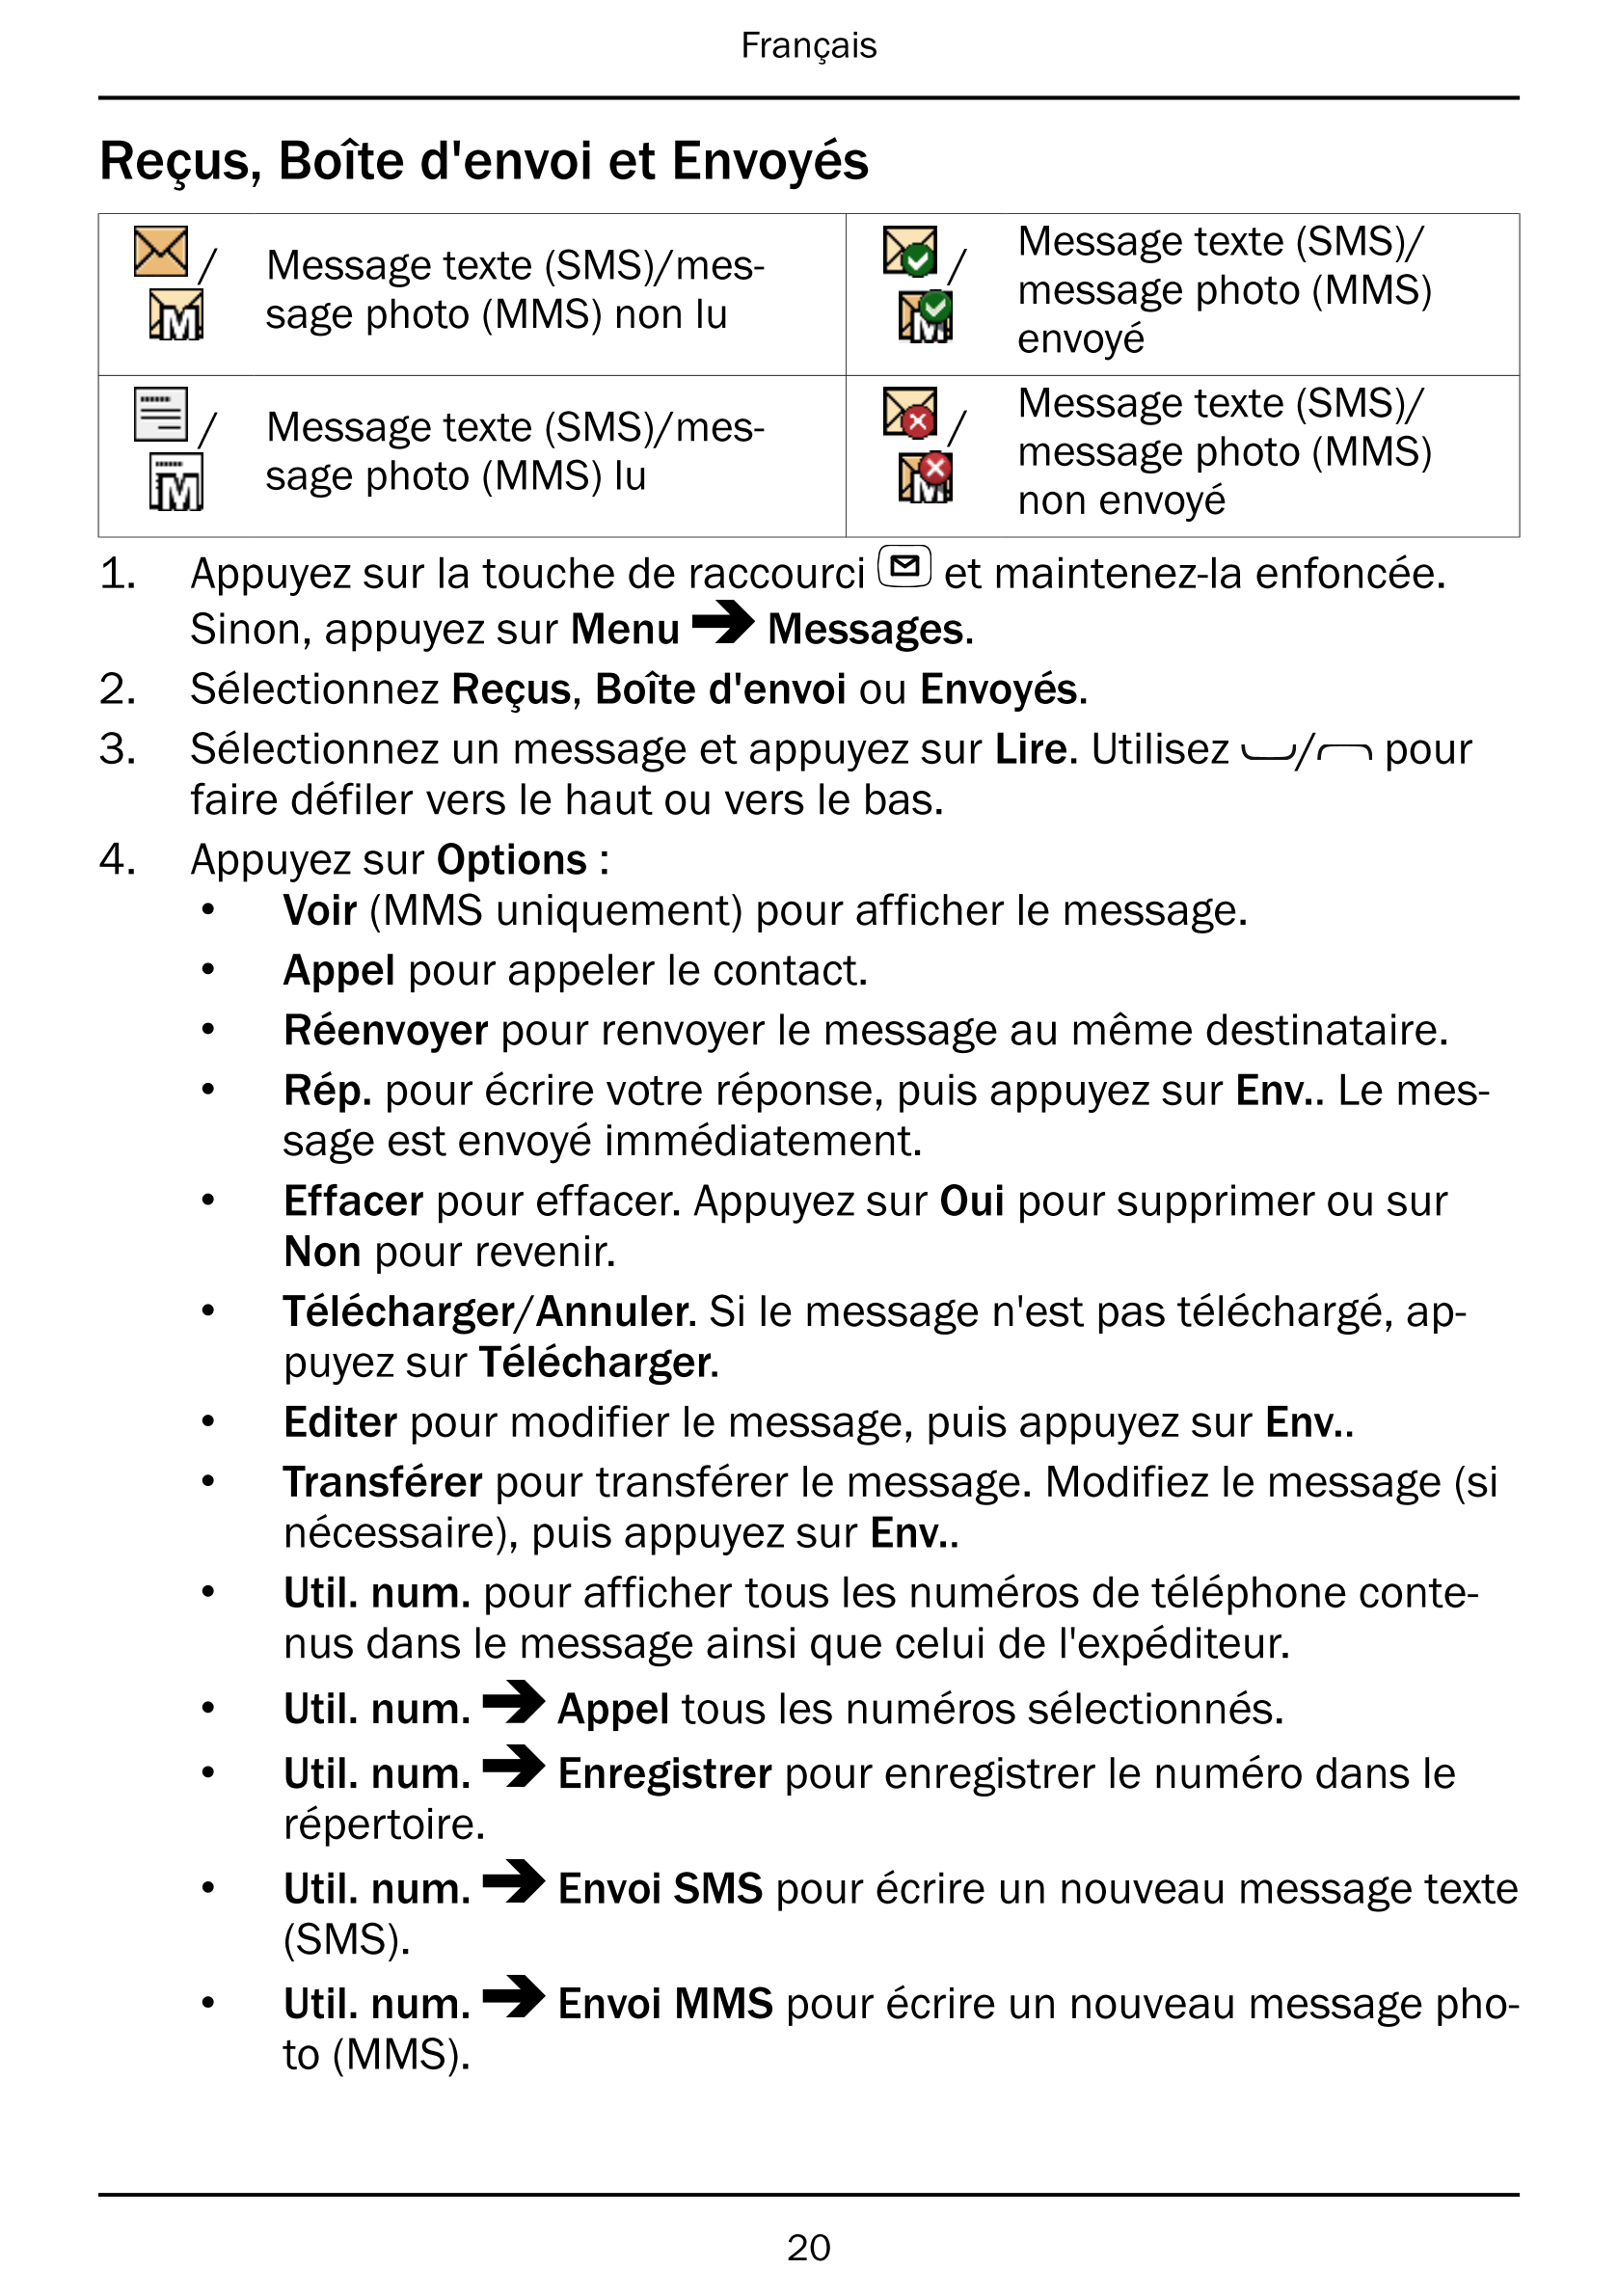 Français
Reçus, Boîte d'envoi et Envoyés
/ Message texte (SMS)/mes- / message photo (MMS)Message texte (SMS)/sage photo (MMS) no